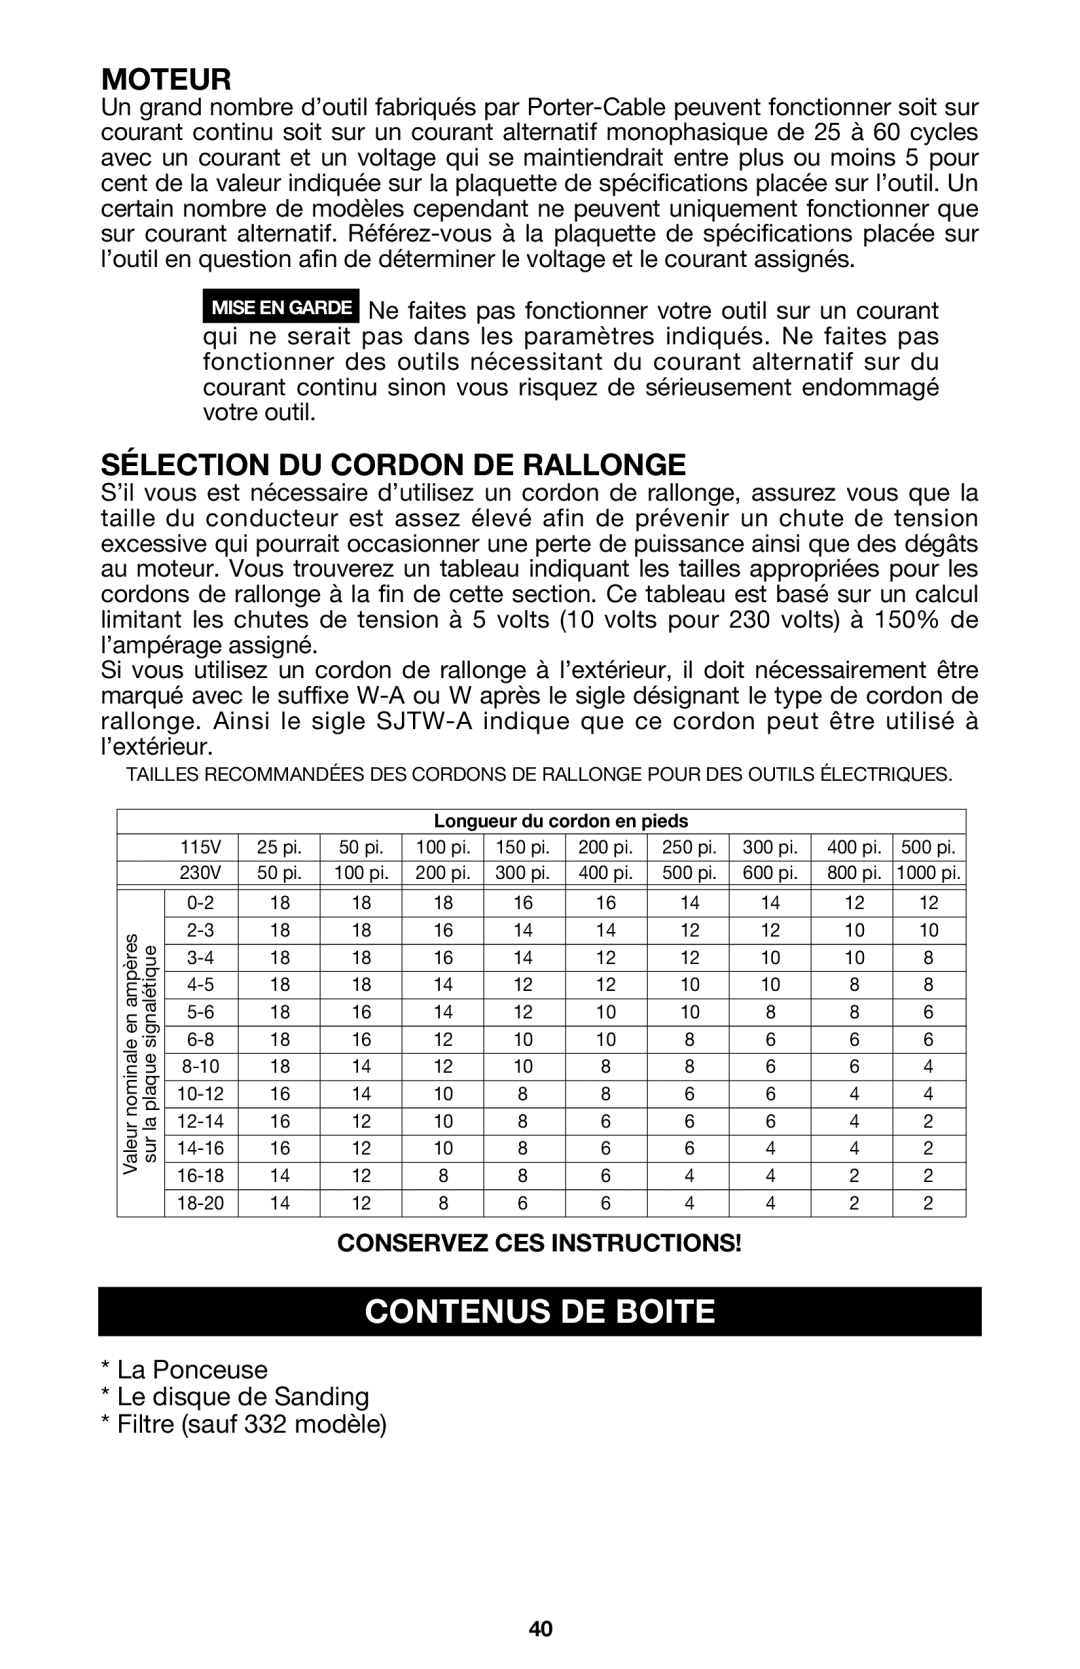 Porter-Cable 333VS instruction manual Contenus De Boite, Moteur, Sélection Du Cordon De Rallonge 